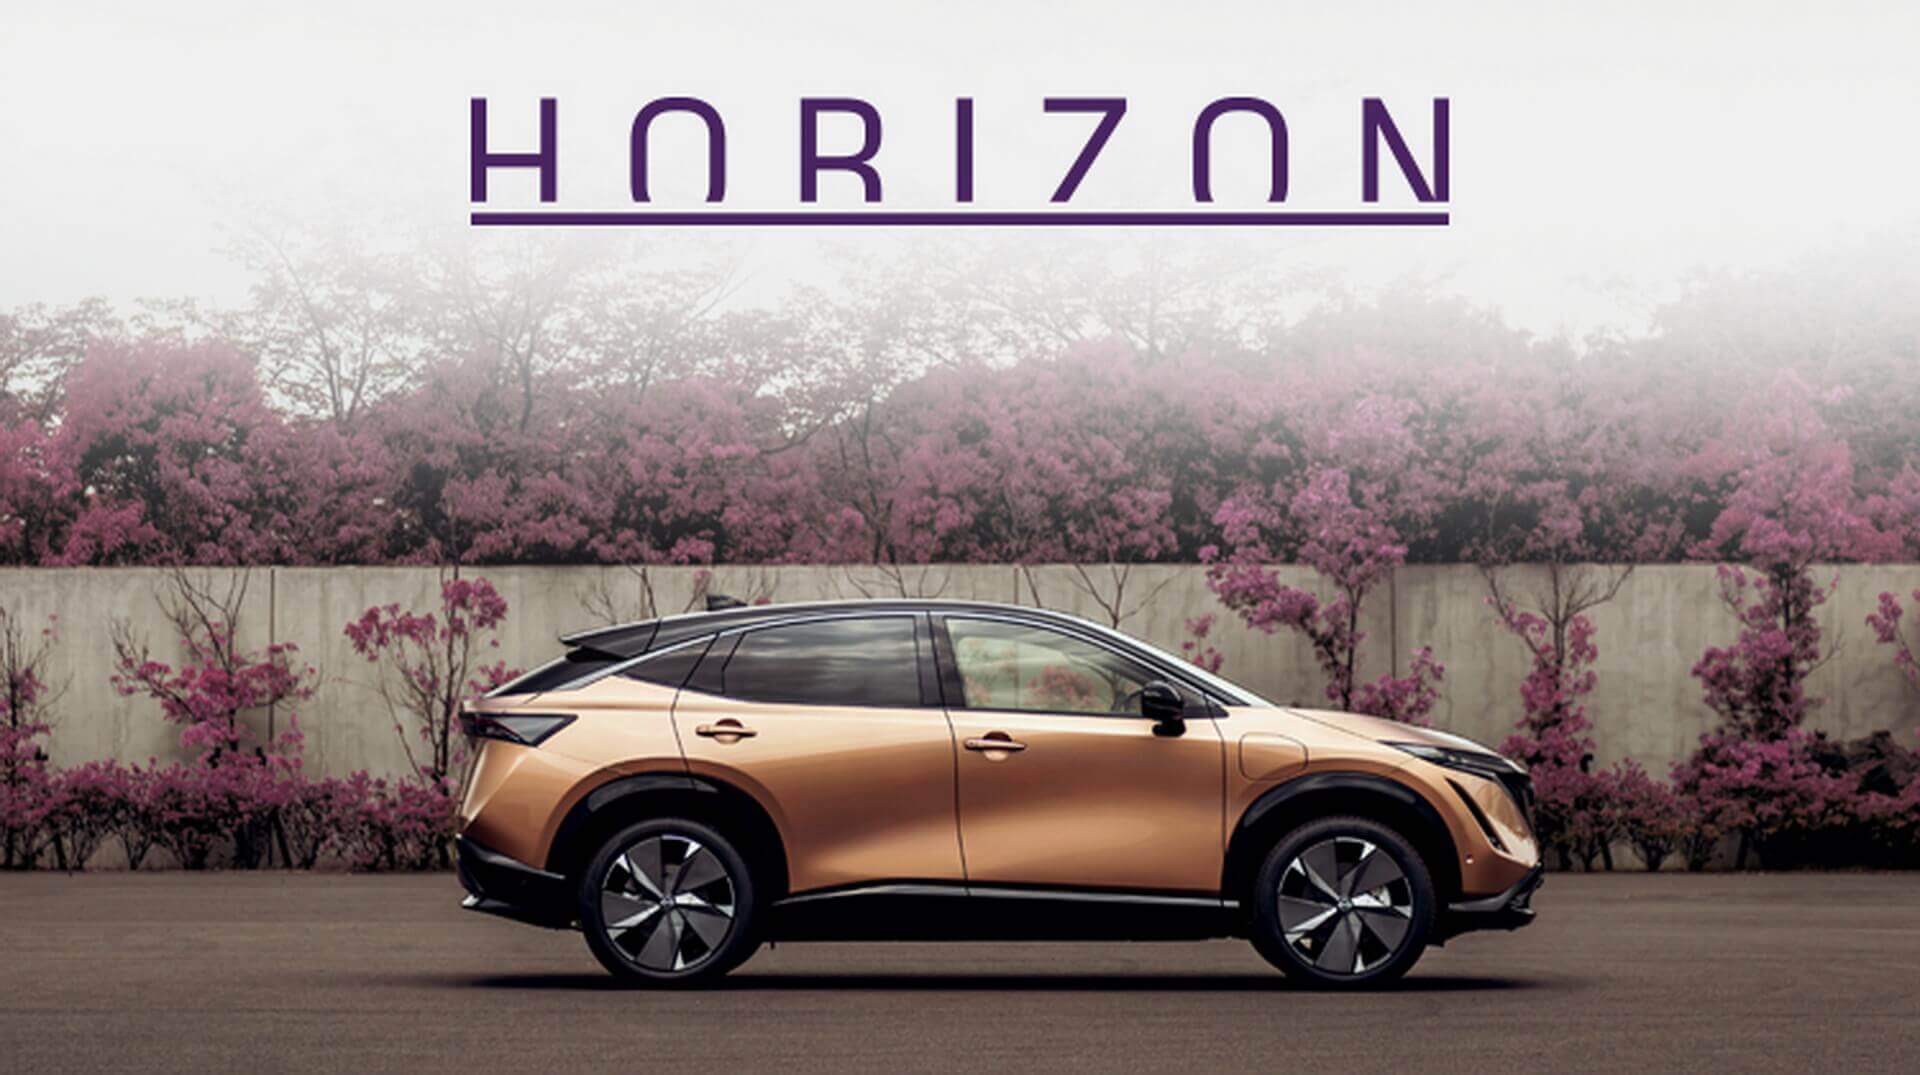 Цифровой журнал Horizon в шести уникальных историях рассказывает о дизайне нового электромобиля Nissan Ariya